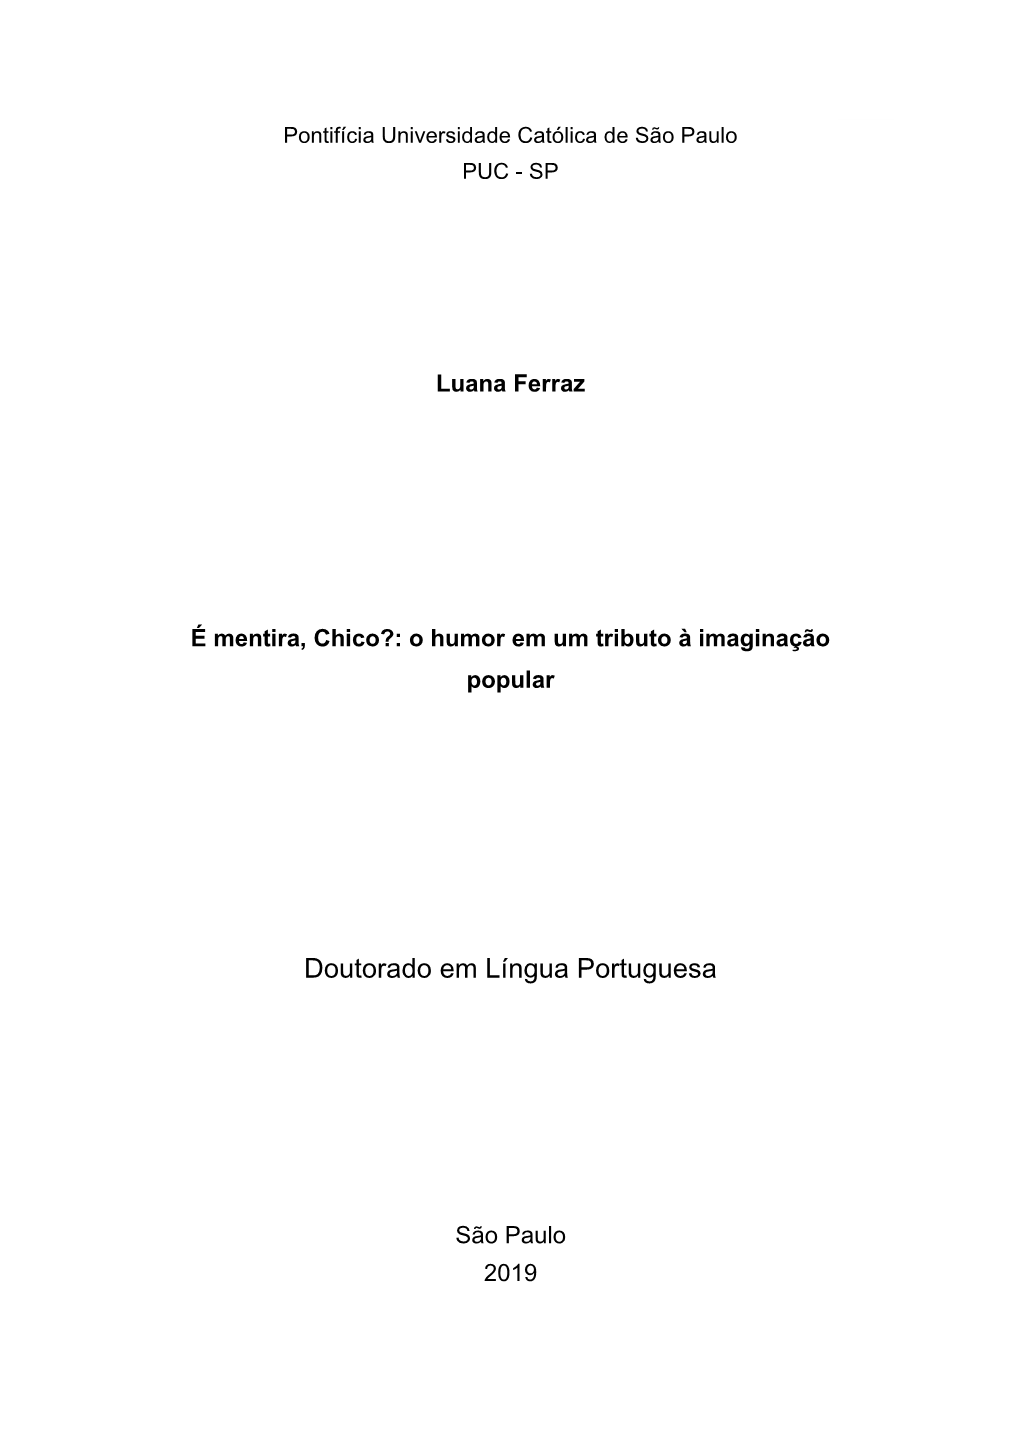 Doutorado Em Língua Portuguesa